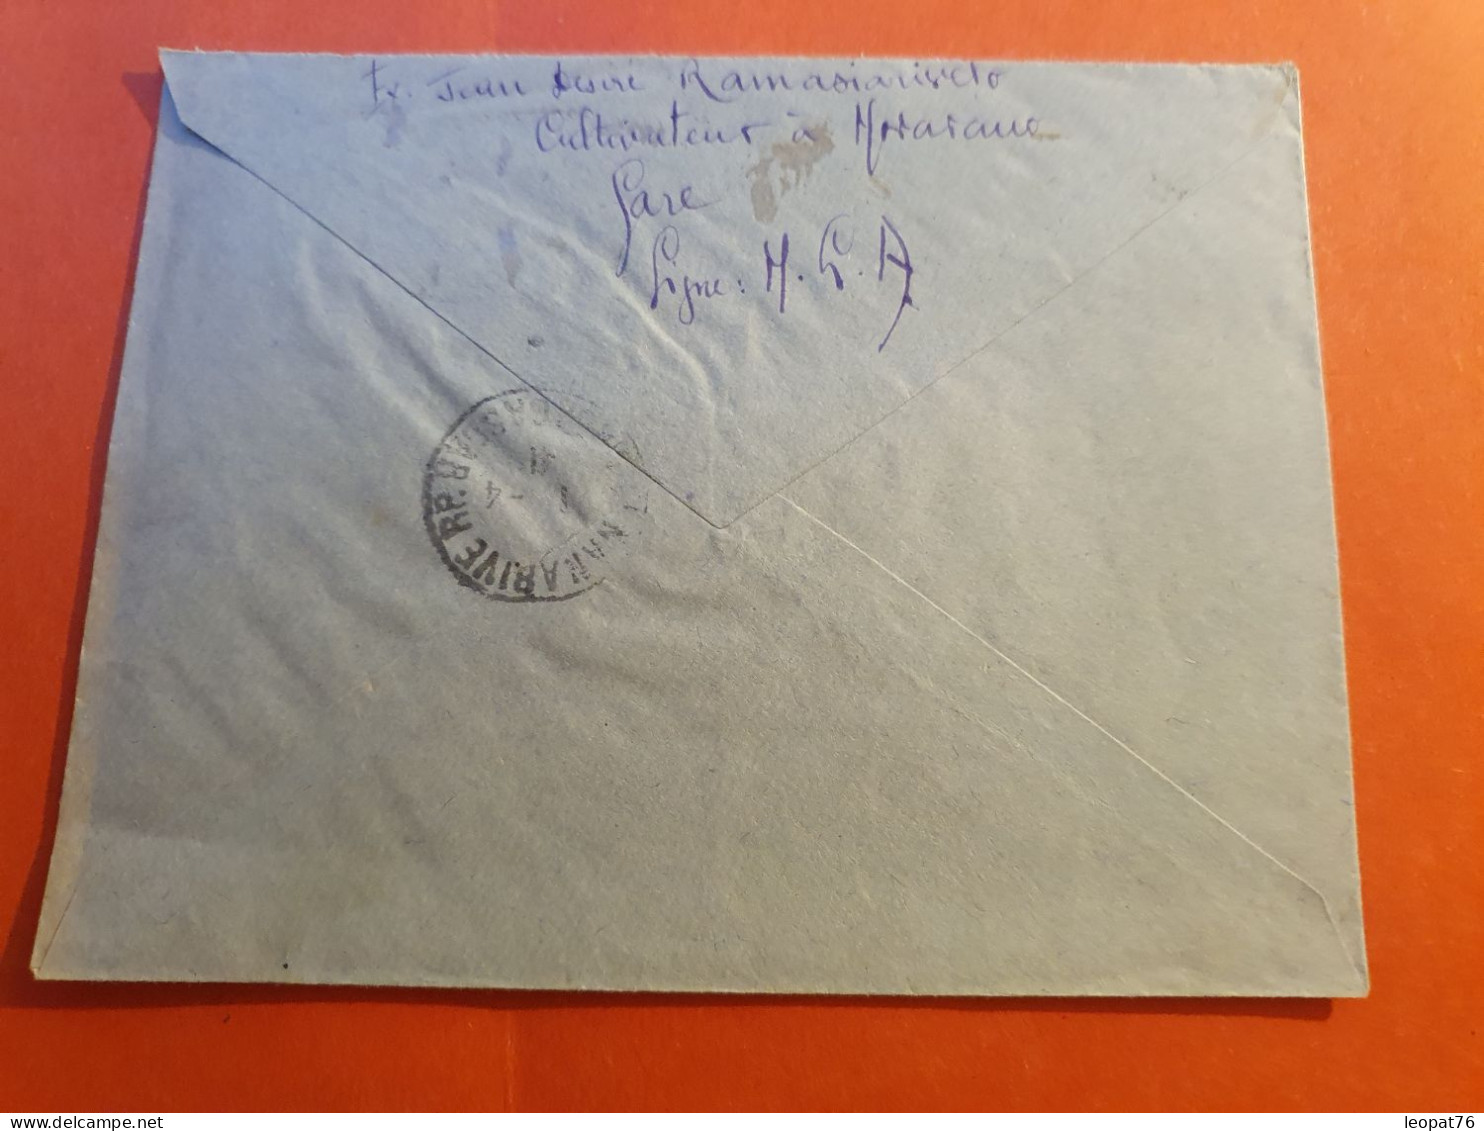 Madagascar - Enveloppe En Recommandé De Moramanga Pour Tananarive En 1941 - J 100 - Lettres & Documents